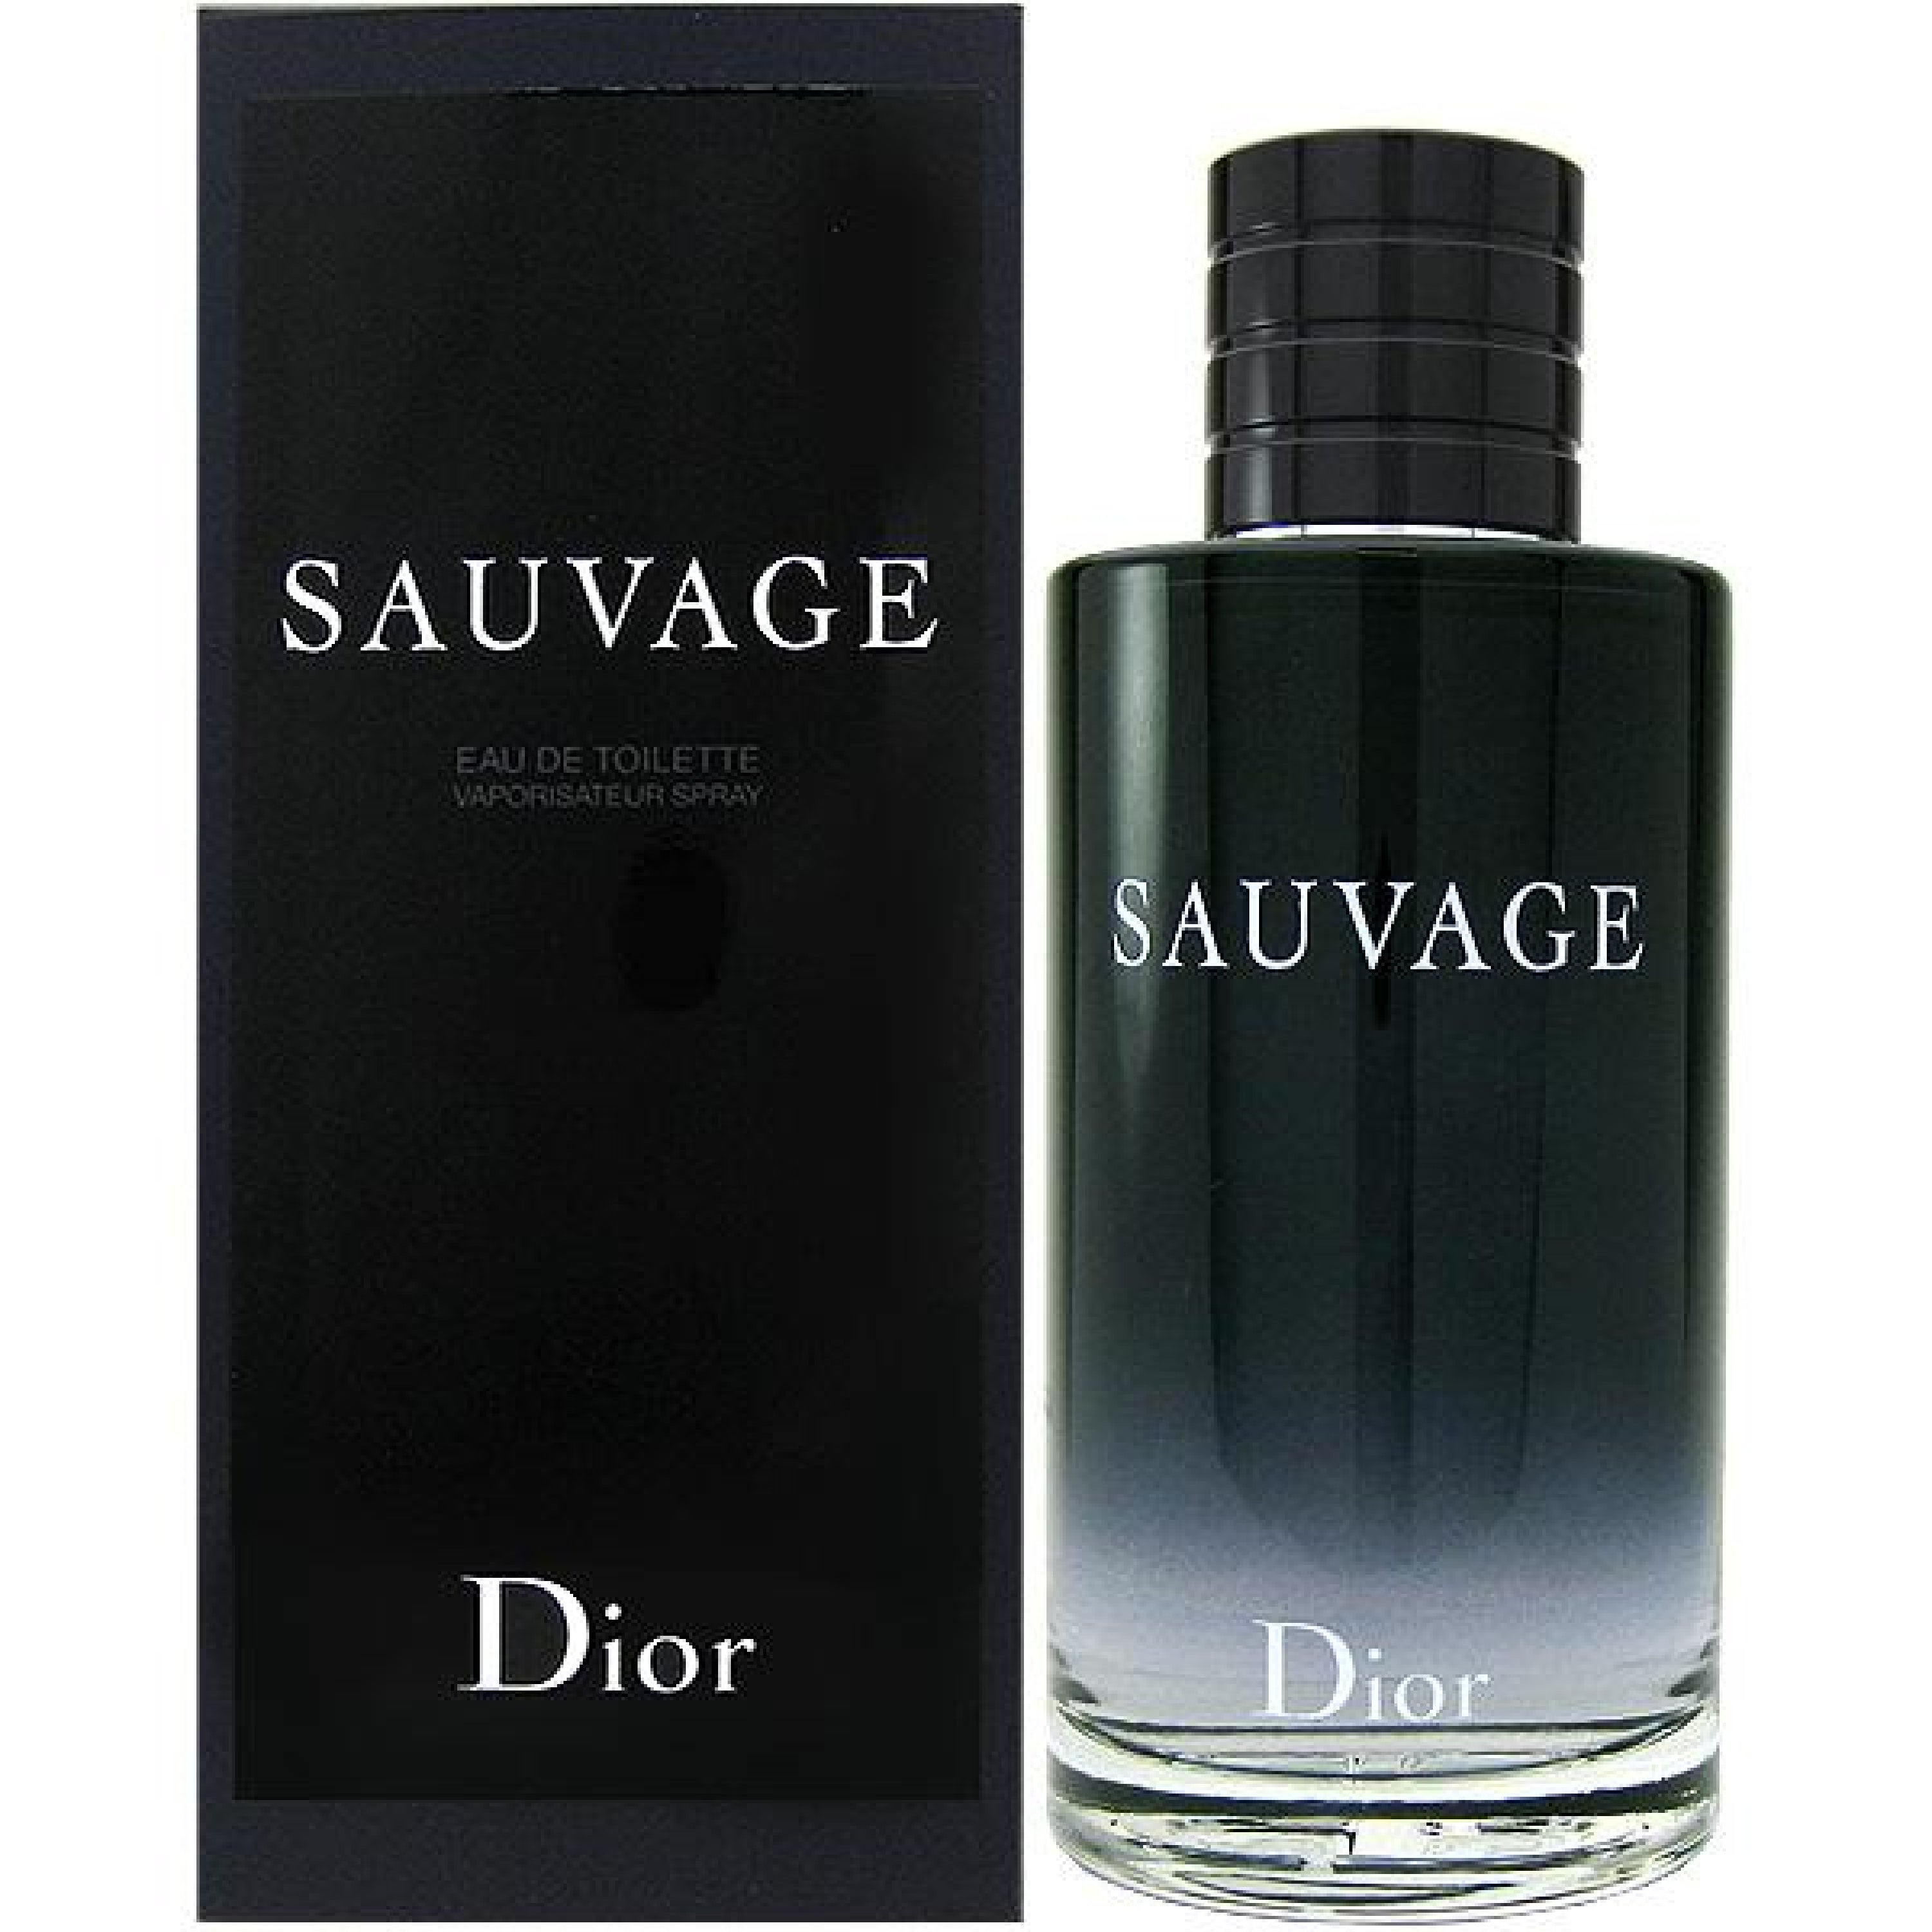 sauvage dior 200ml price